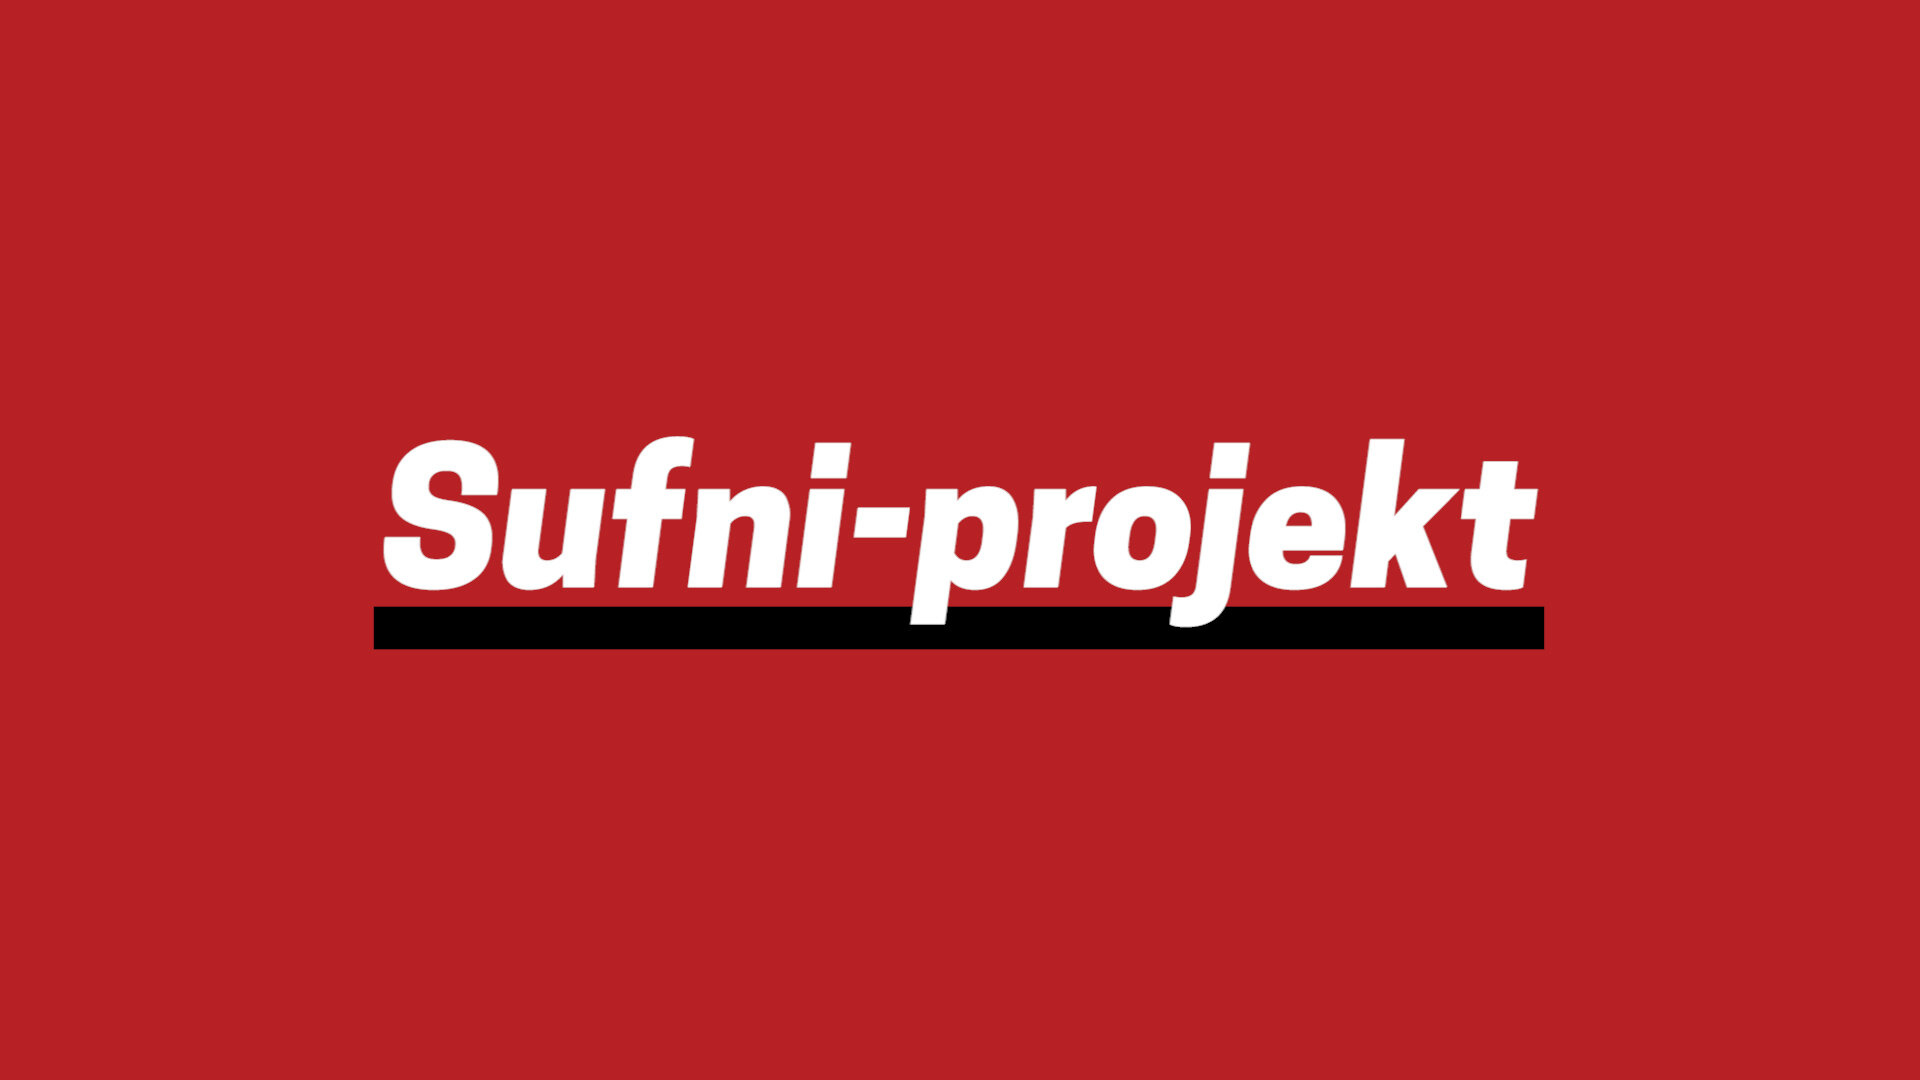 Sufni-projekt